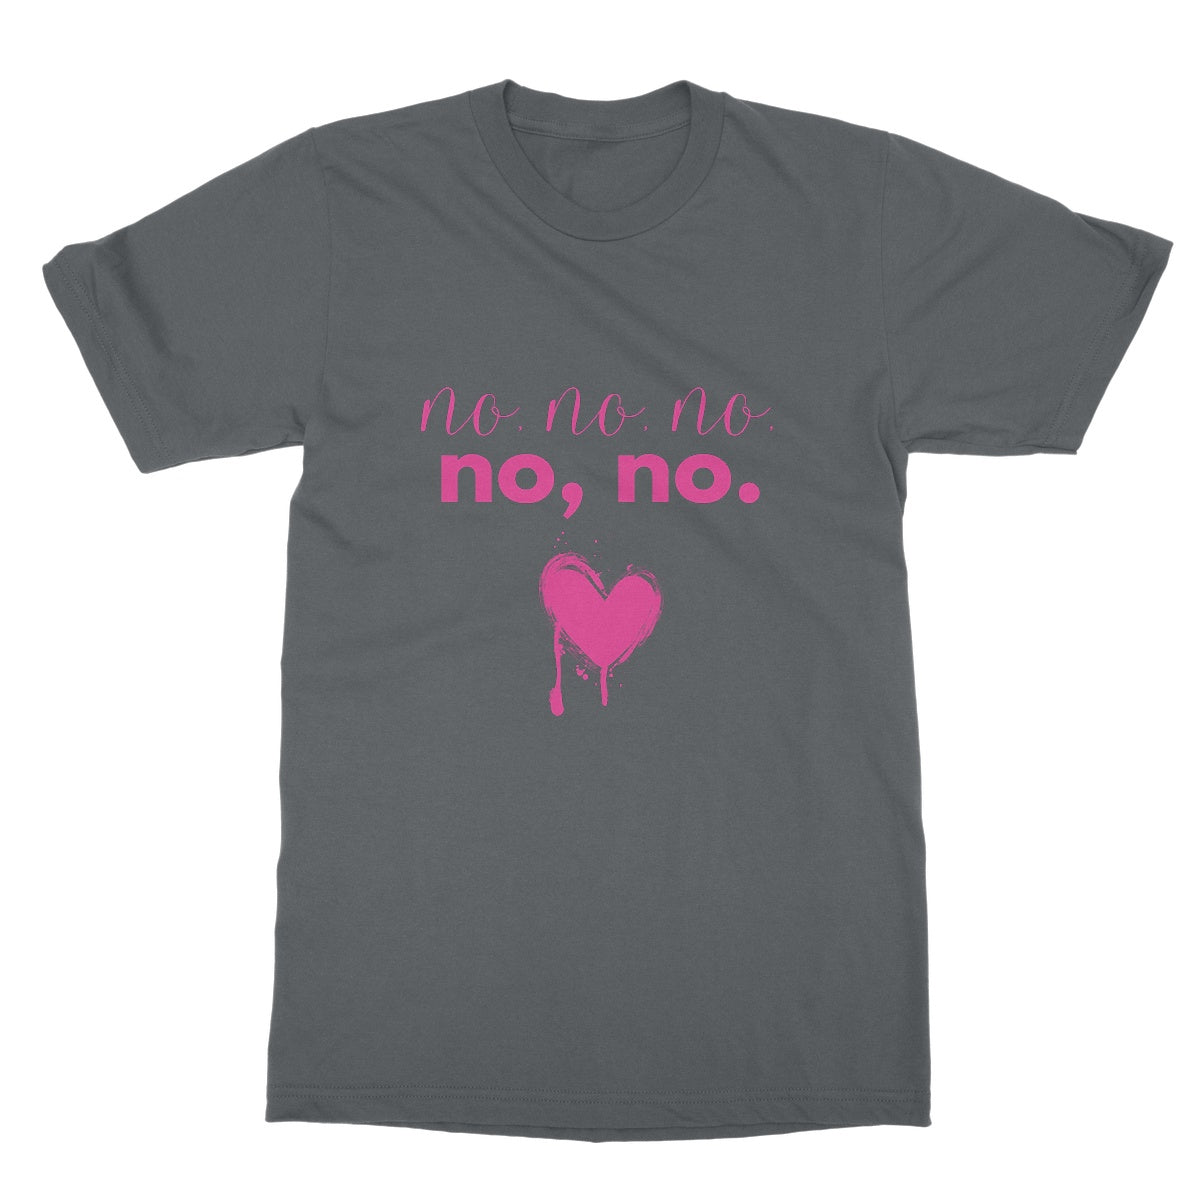 No, no, no, no, no. Funny Slogan Softstyle T-Shirt